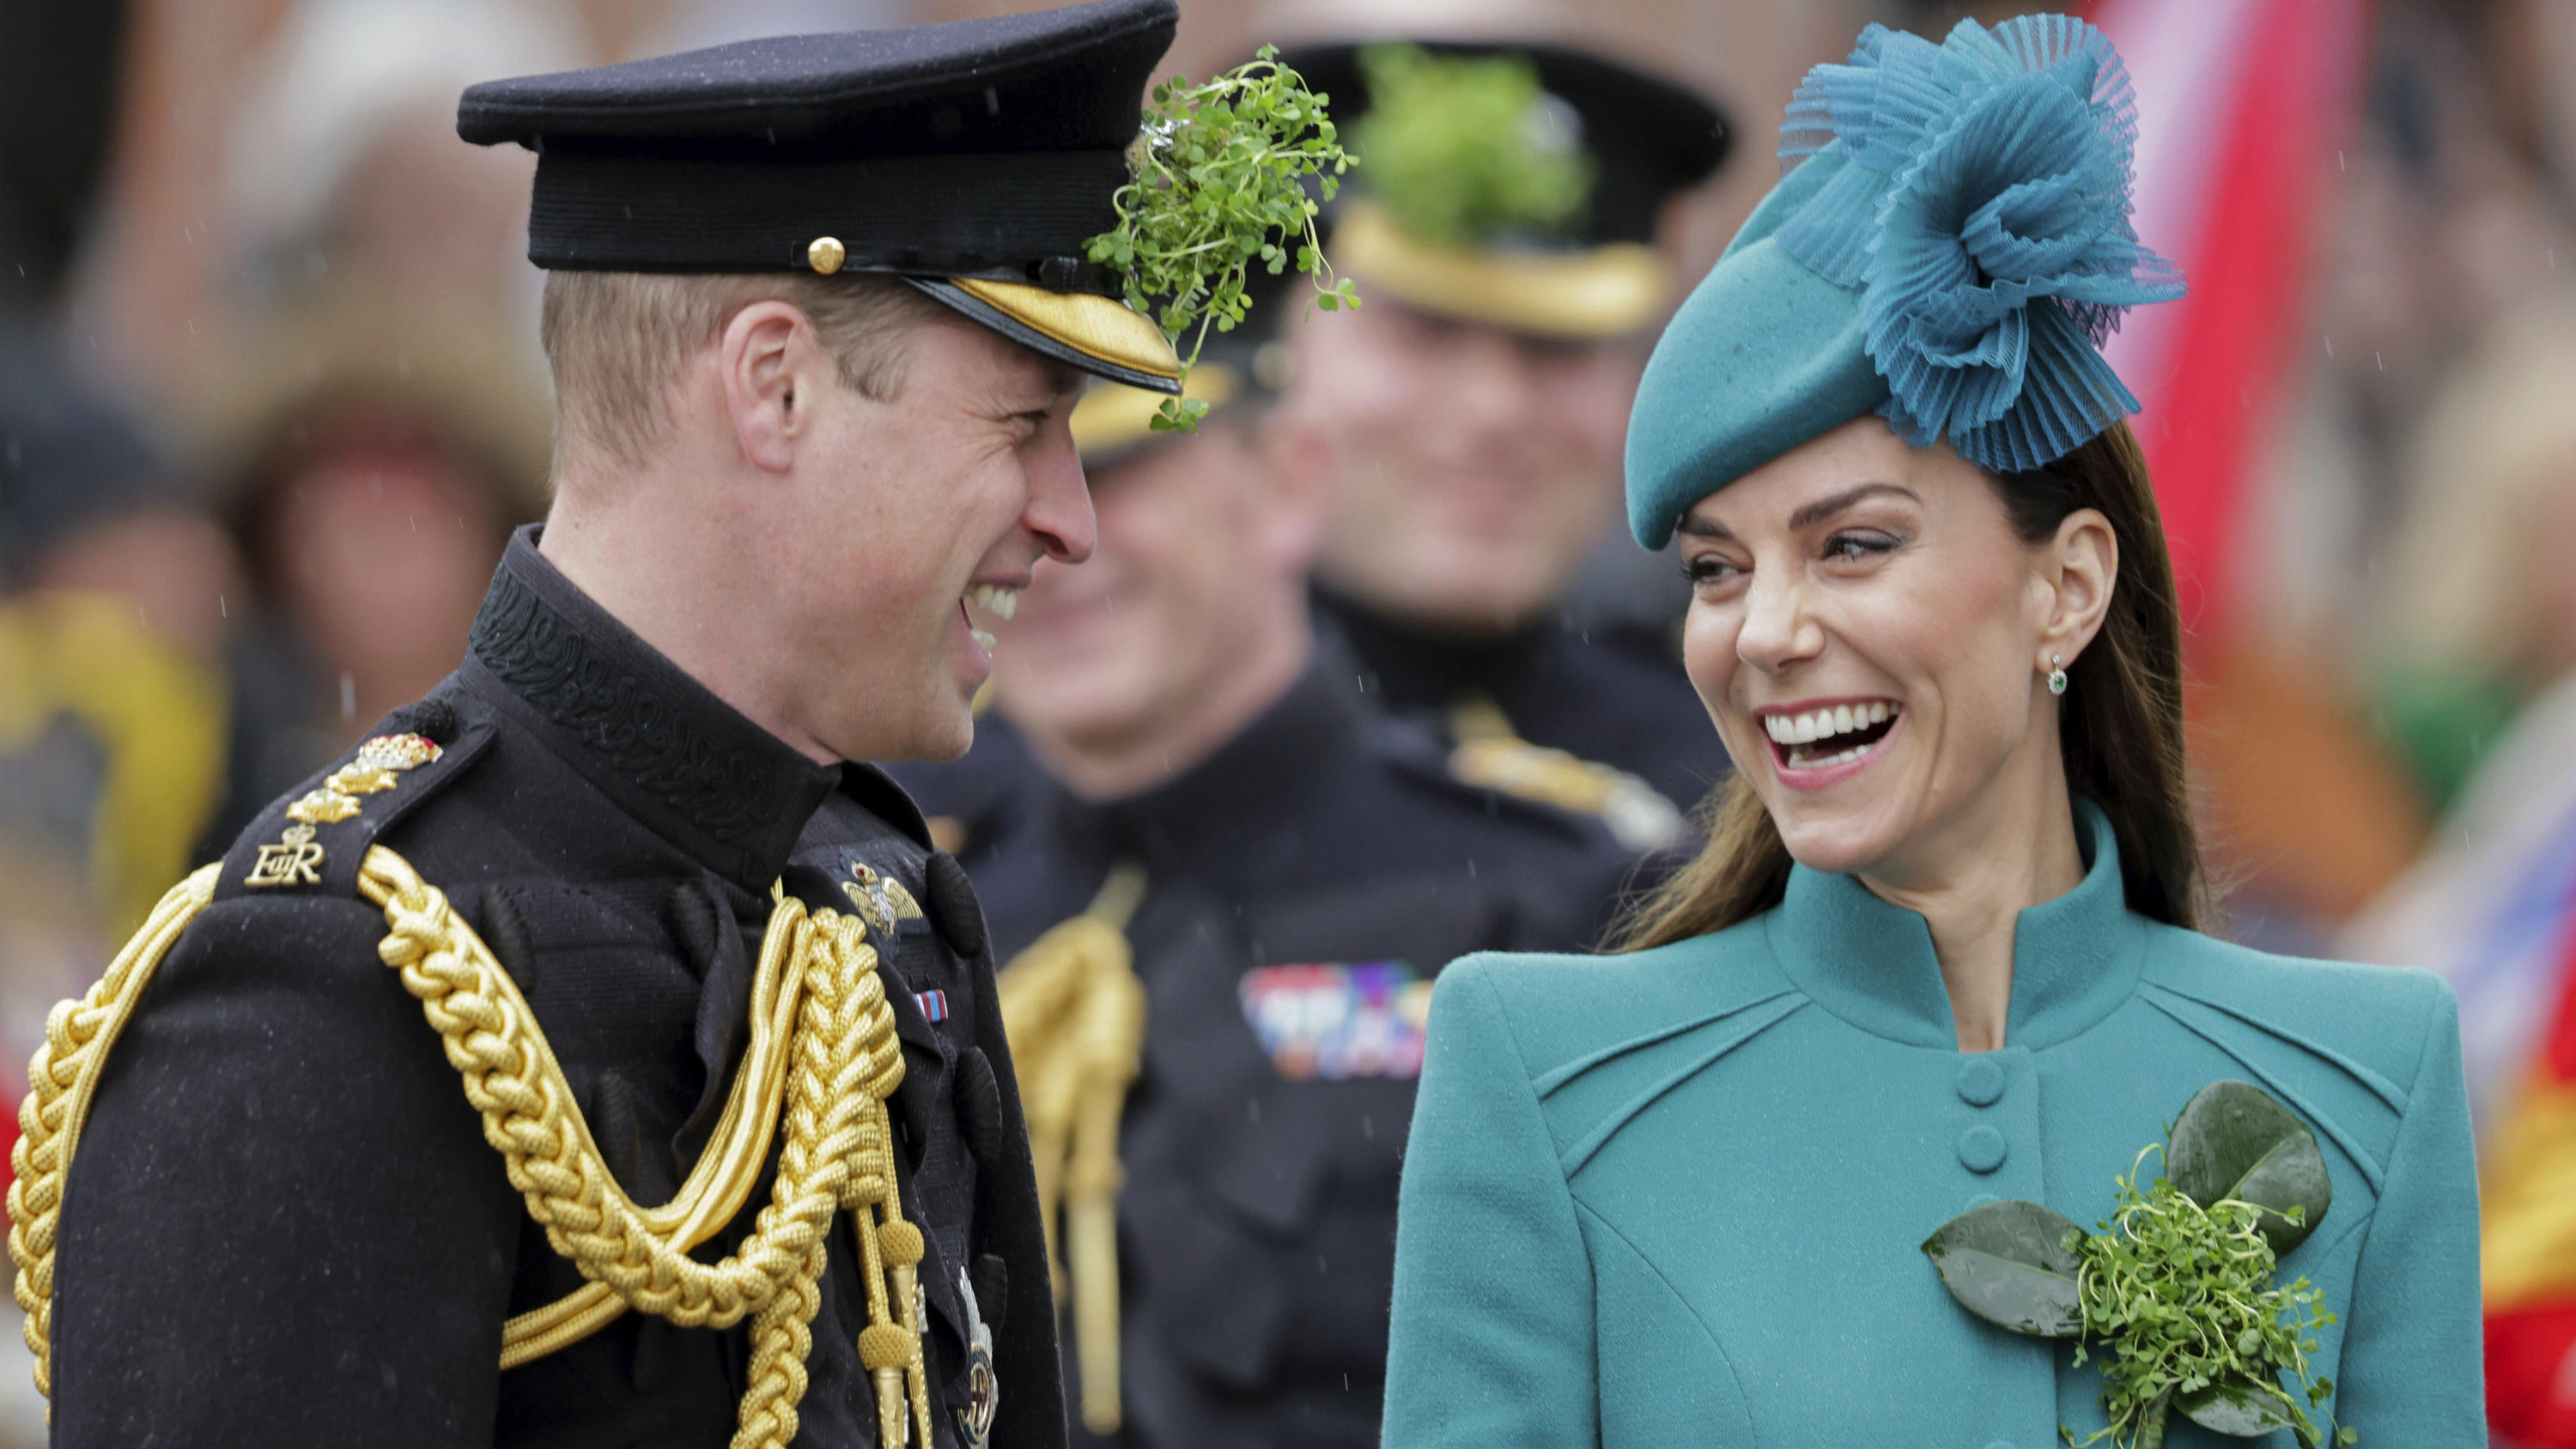 St. Patrick's Day - Besuch der Royal Irish Guards: Prinz William übergibt seinen Oberst-Titel an seine Frau Kate.